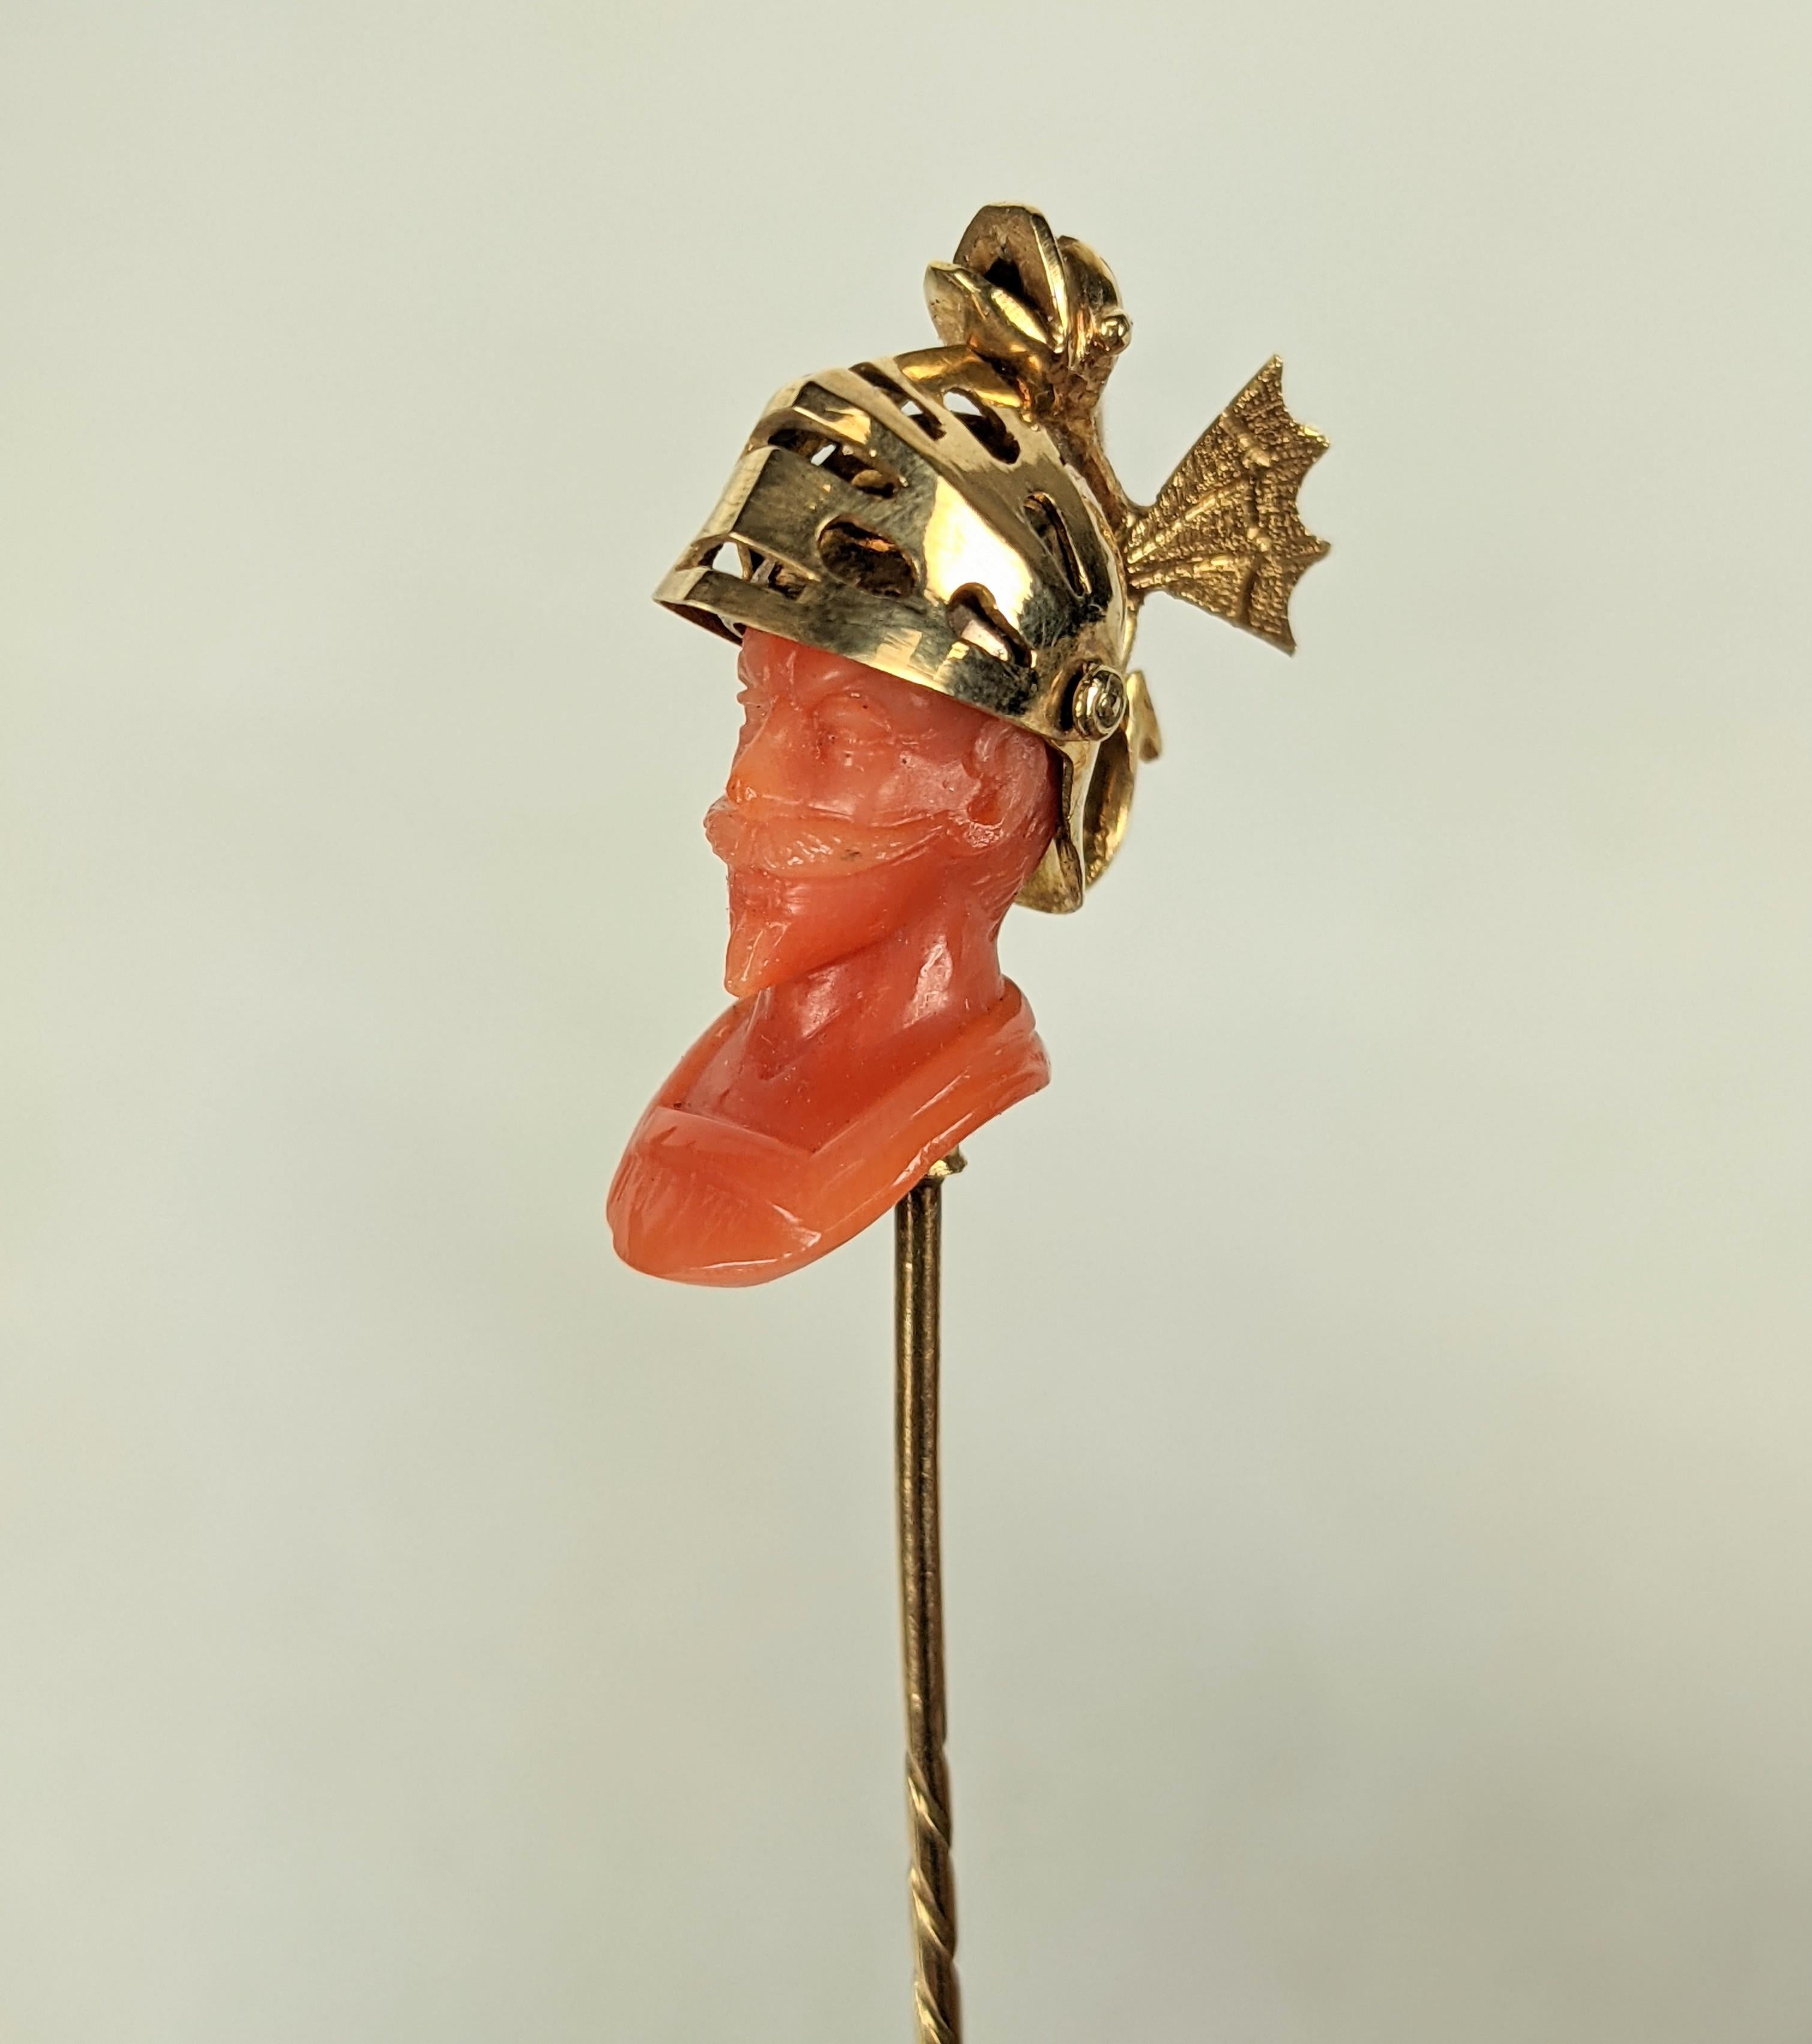 Exceptionnelle épingle de cravate de qualité Tiffany du 19e siècle en corail sculpté, avec un casque doré à charnière qui s'ouvre avec un dragon perché au sommet. Sculpture et orfèvrerie exquises.
Boîte en cuir originale avec intérieur en velours du